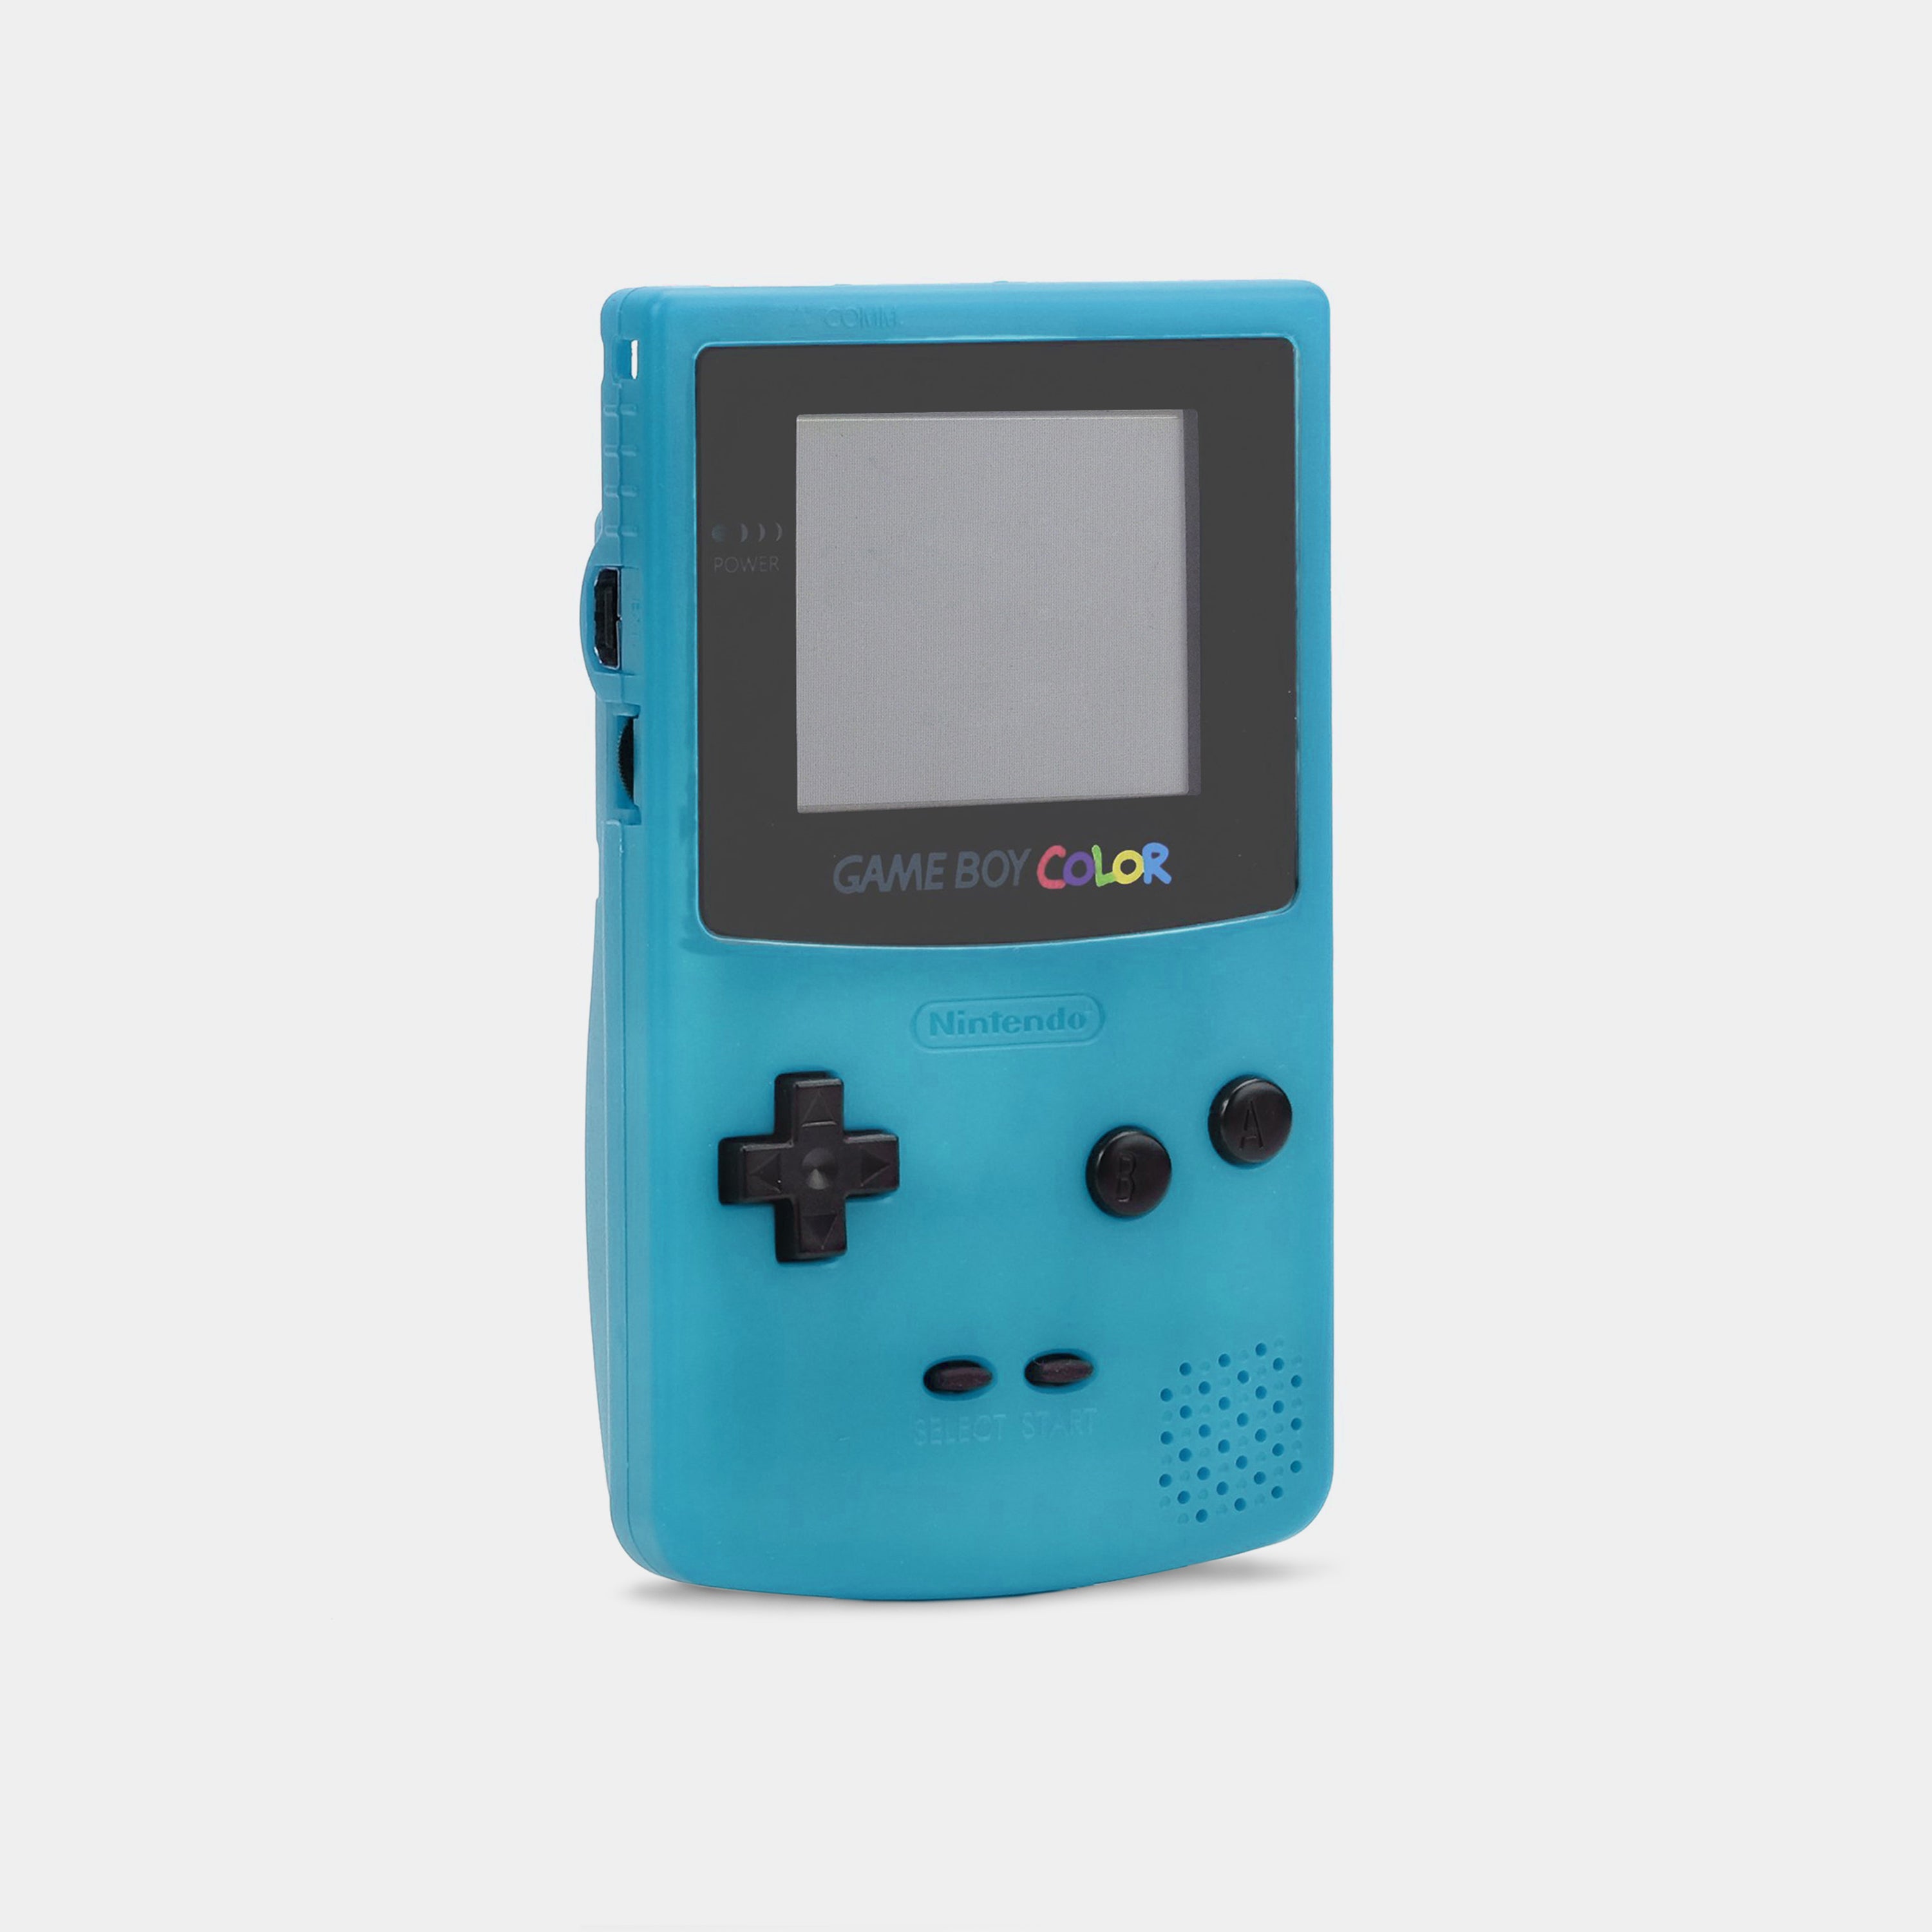 Dårligt humør øst Tilbagetrækning Nintendo Game Boy Color Teal Game Console